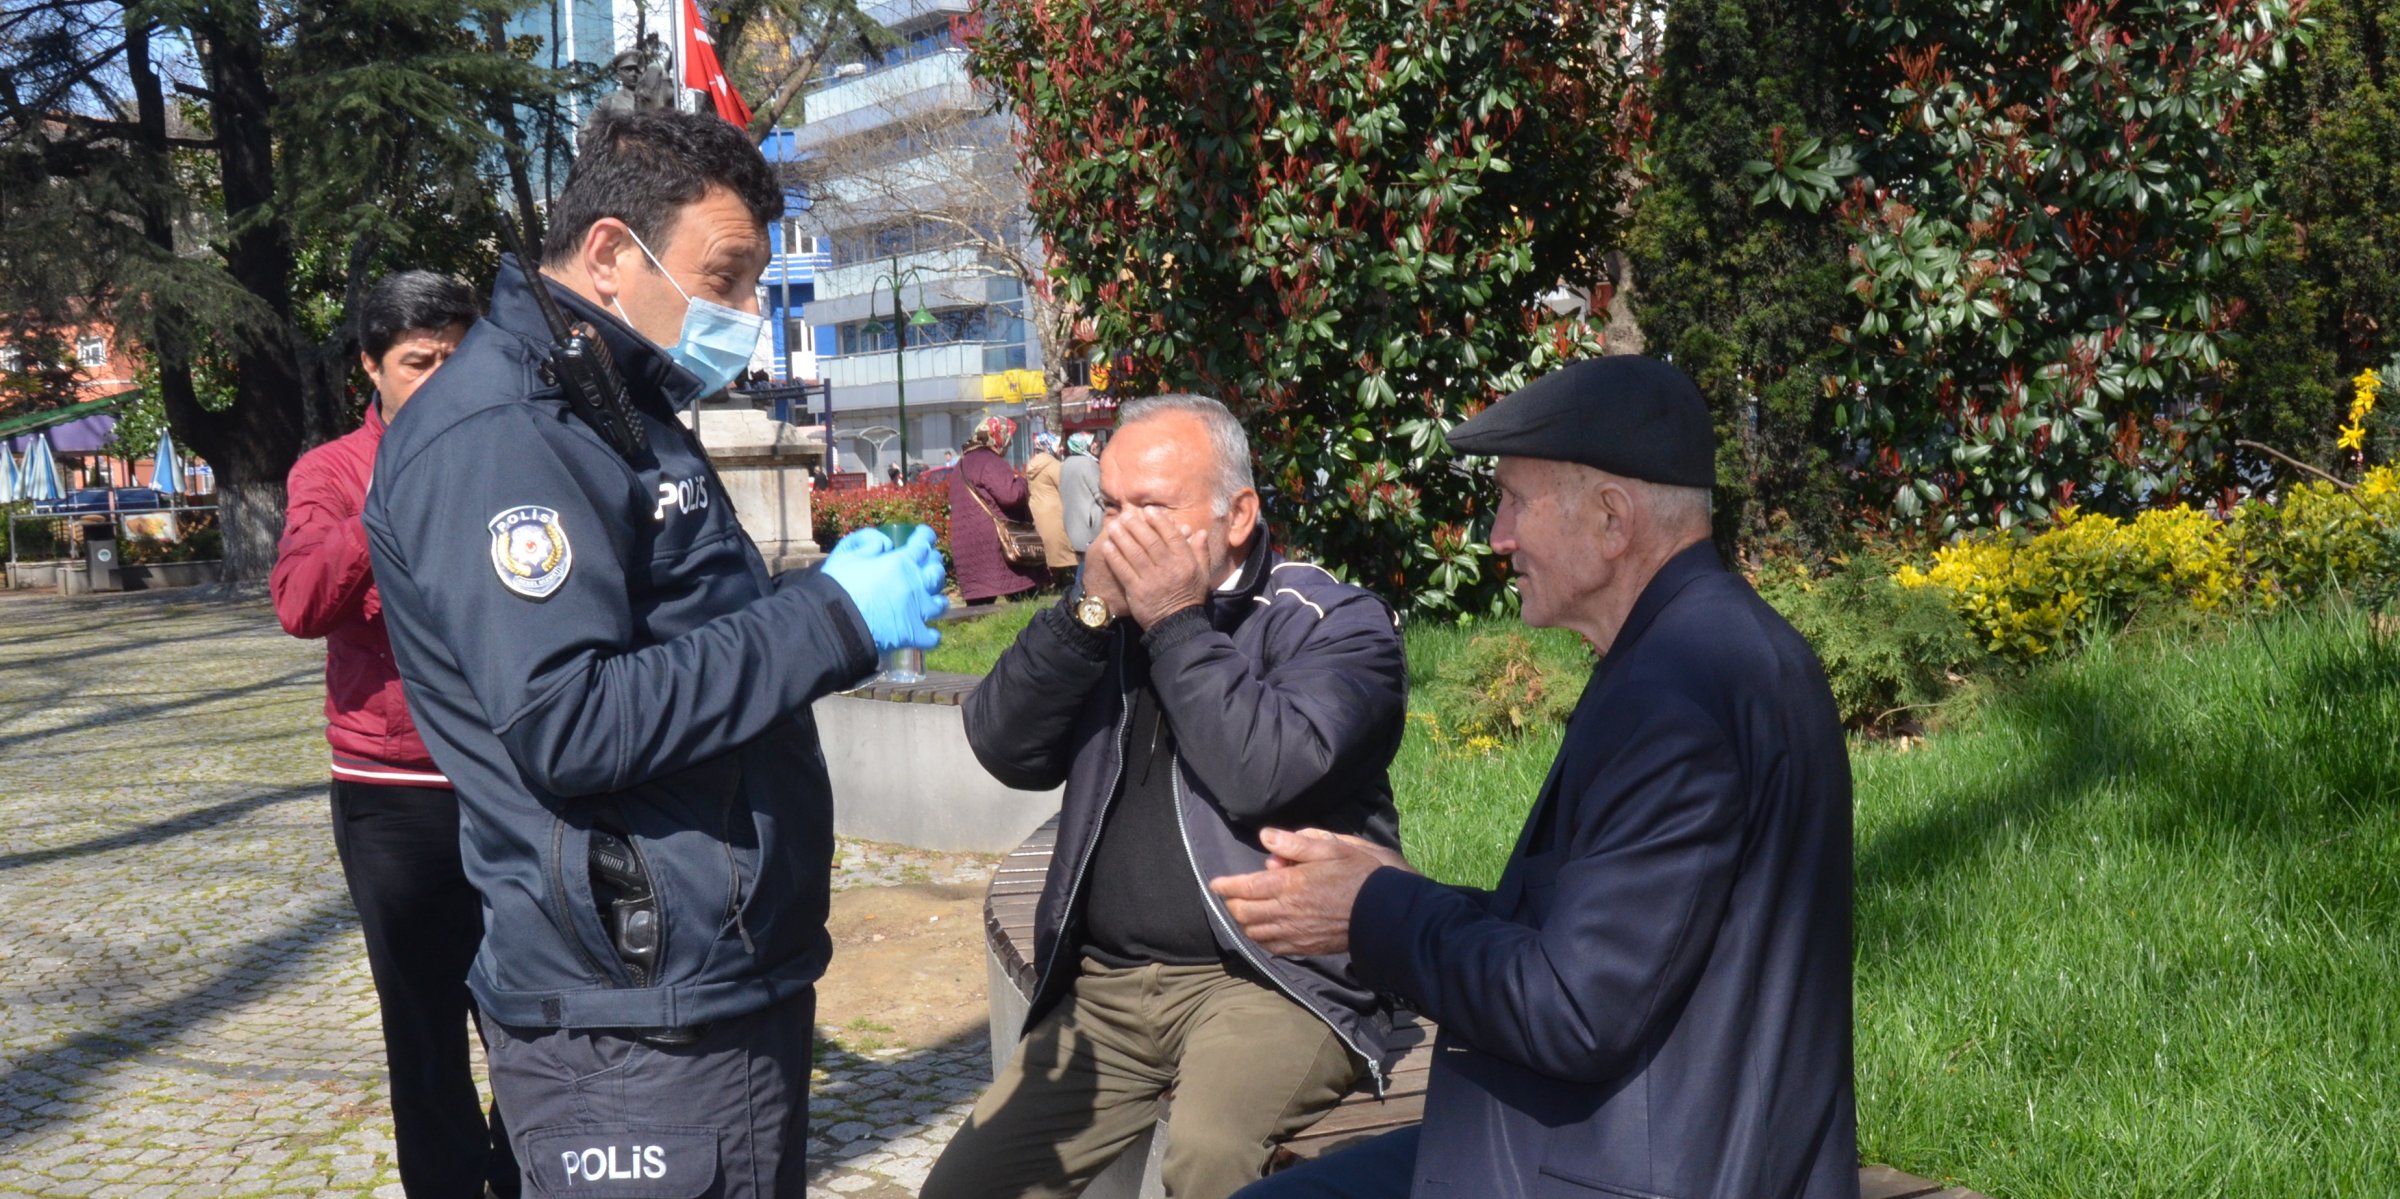 Turkey issues curfew for elderly, chronically ill